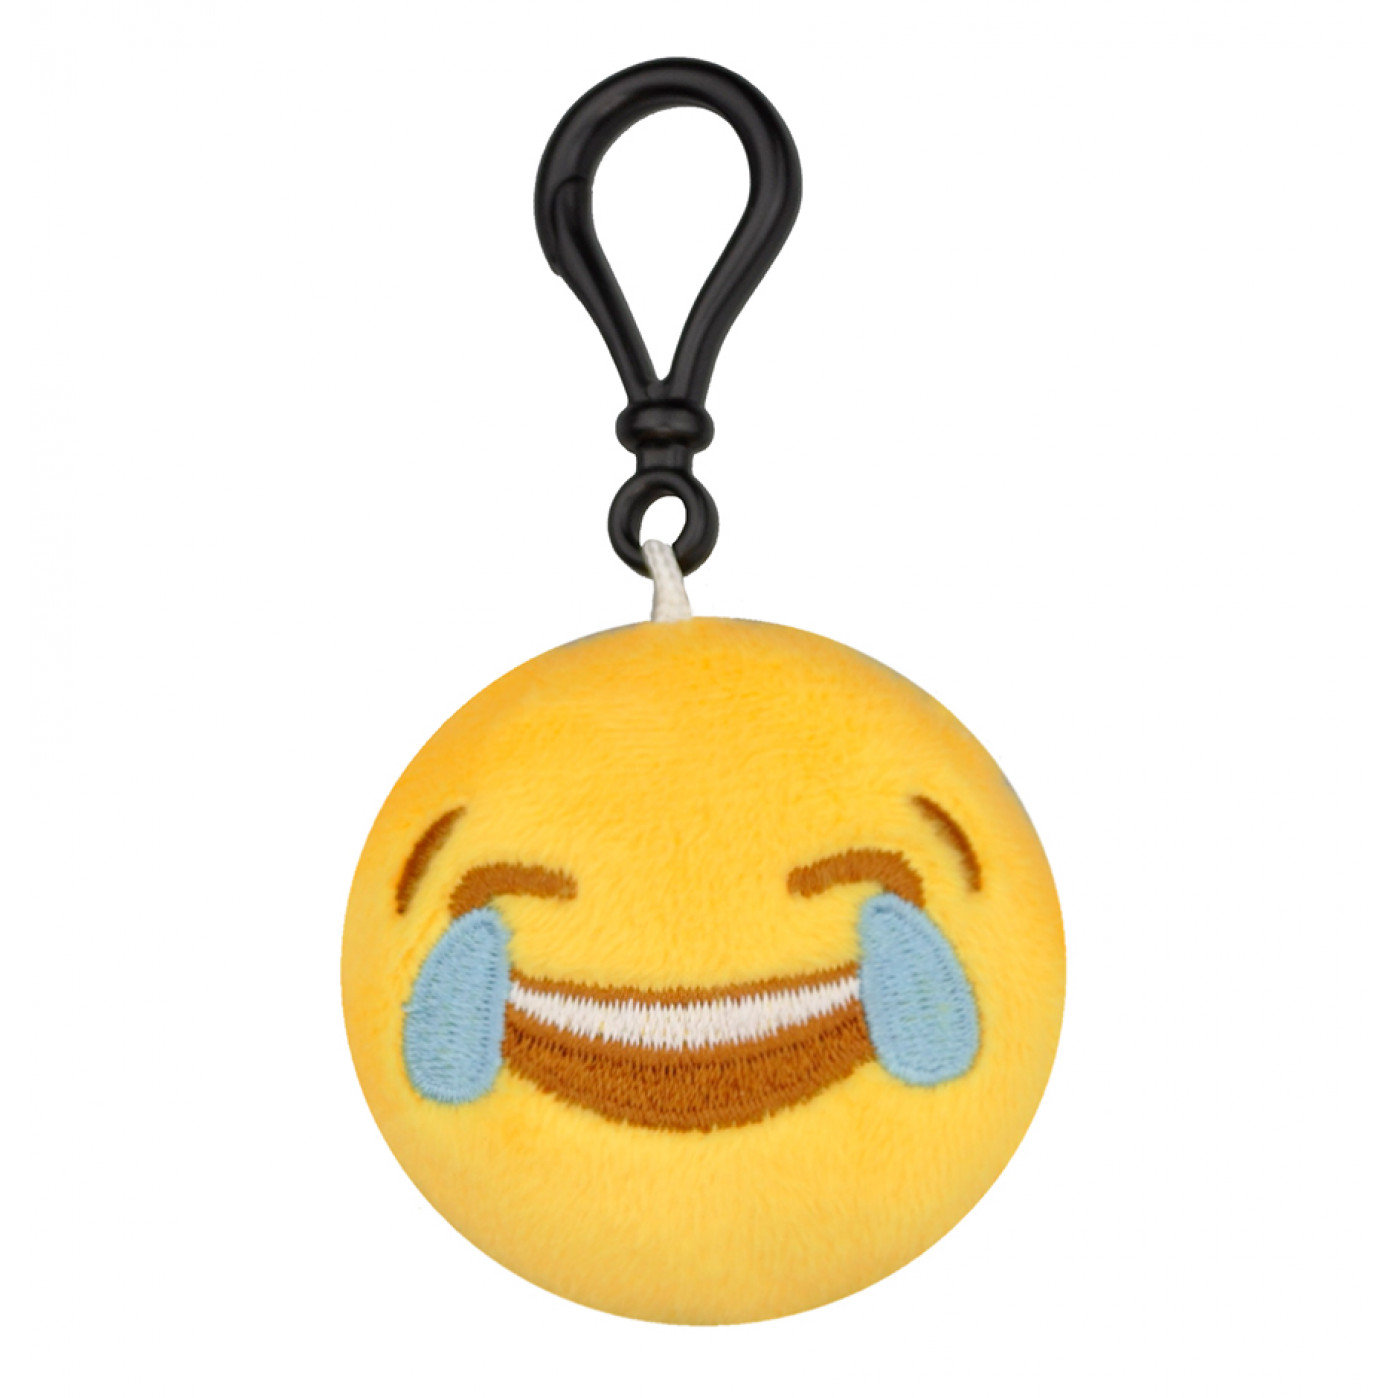 Брелок Emoji Lol 2 слезы